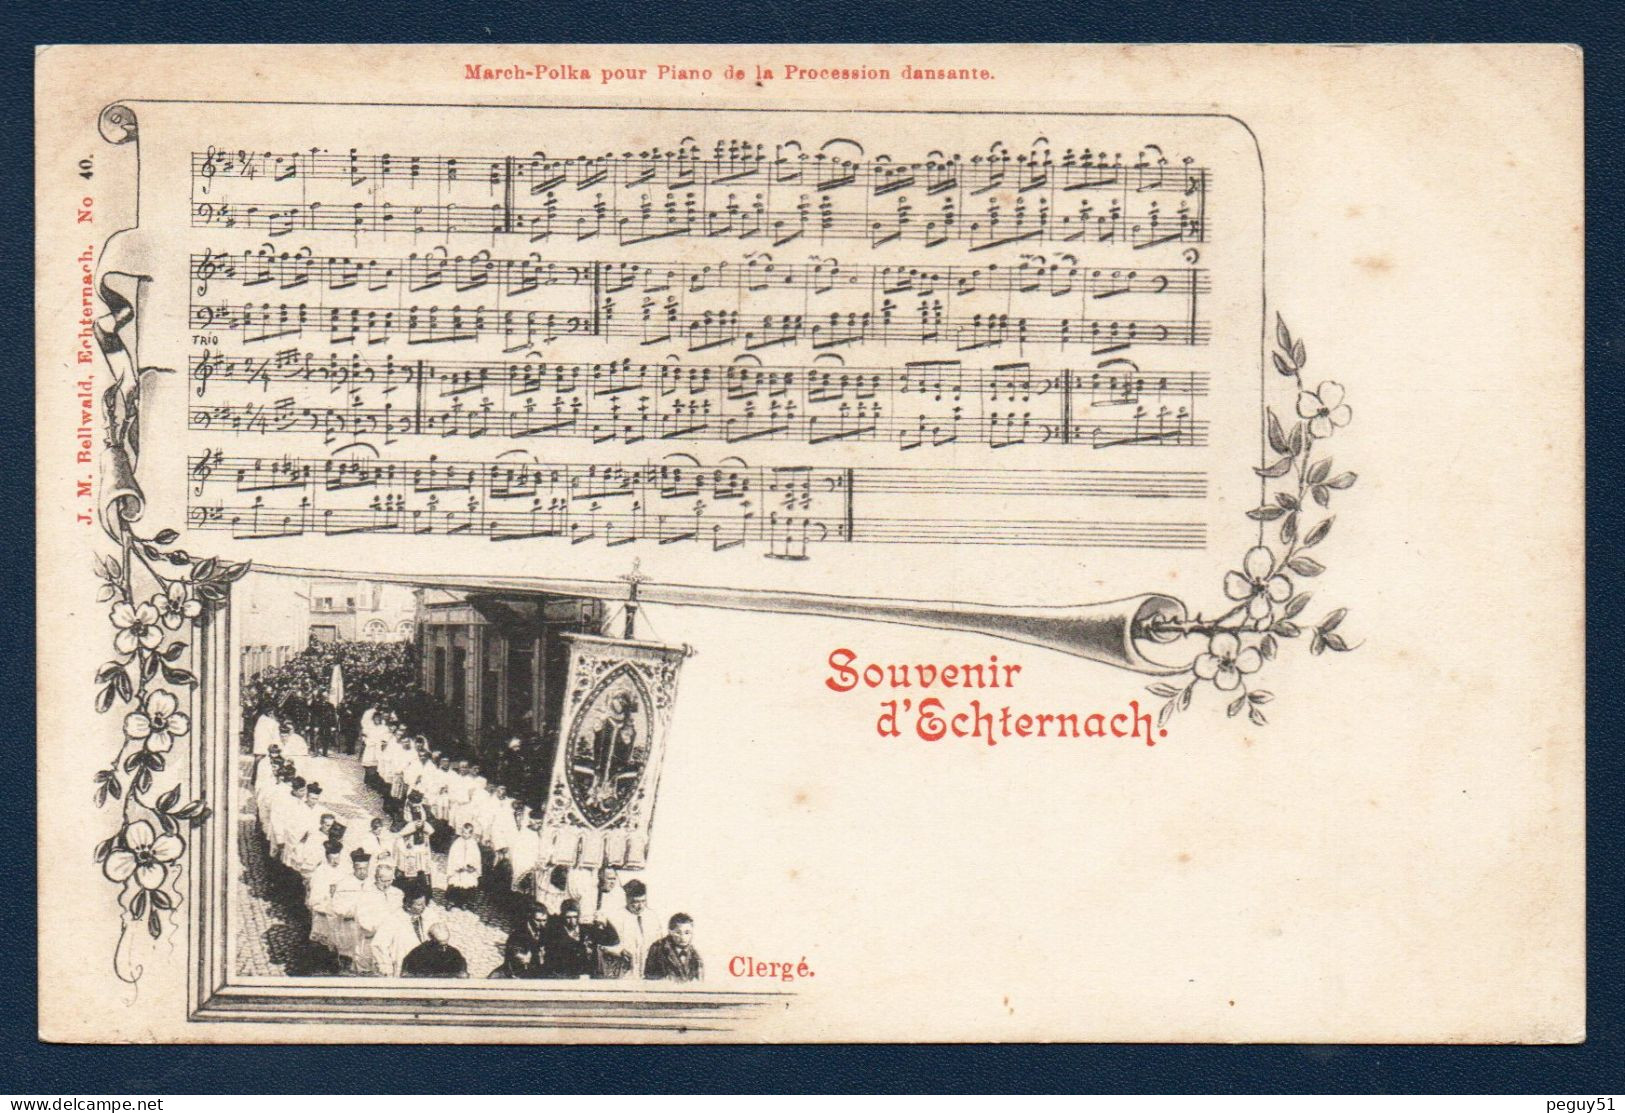 Luxembourg. Souvenir D'Echternach. Défilé Du Clergé. March-Polka Pour Piano De La Procession Dansante. Ca 1900 - Echternach